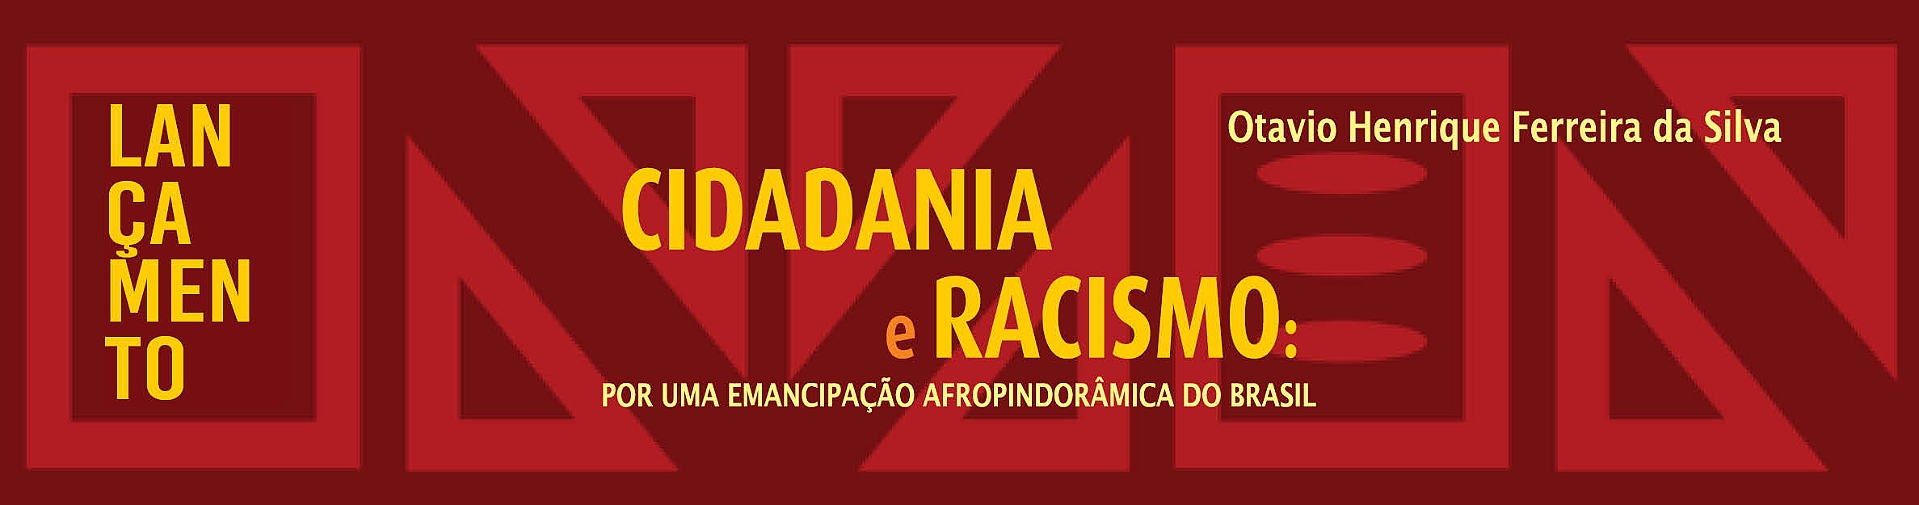 Cidadania e racismo: por uma emancipação afropindorâmica do Brasil